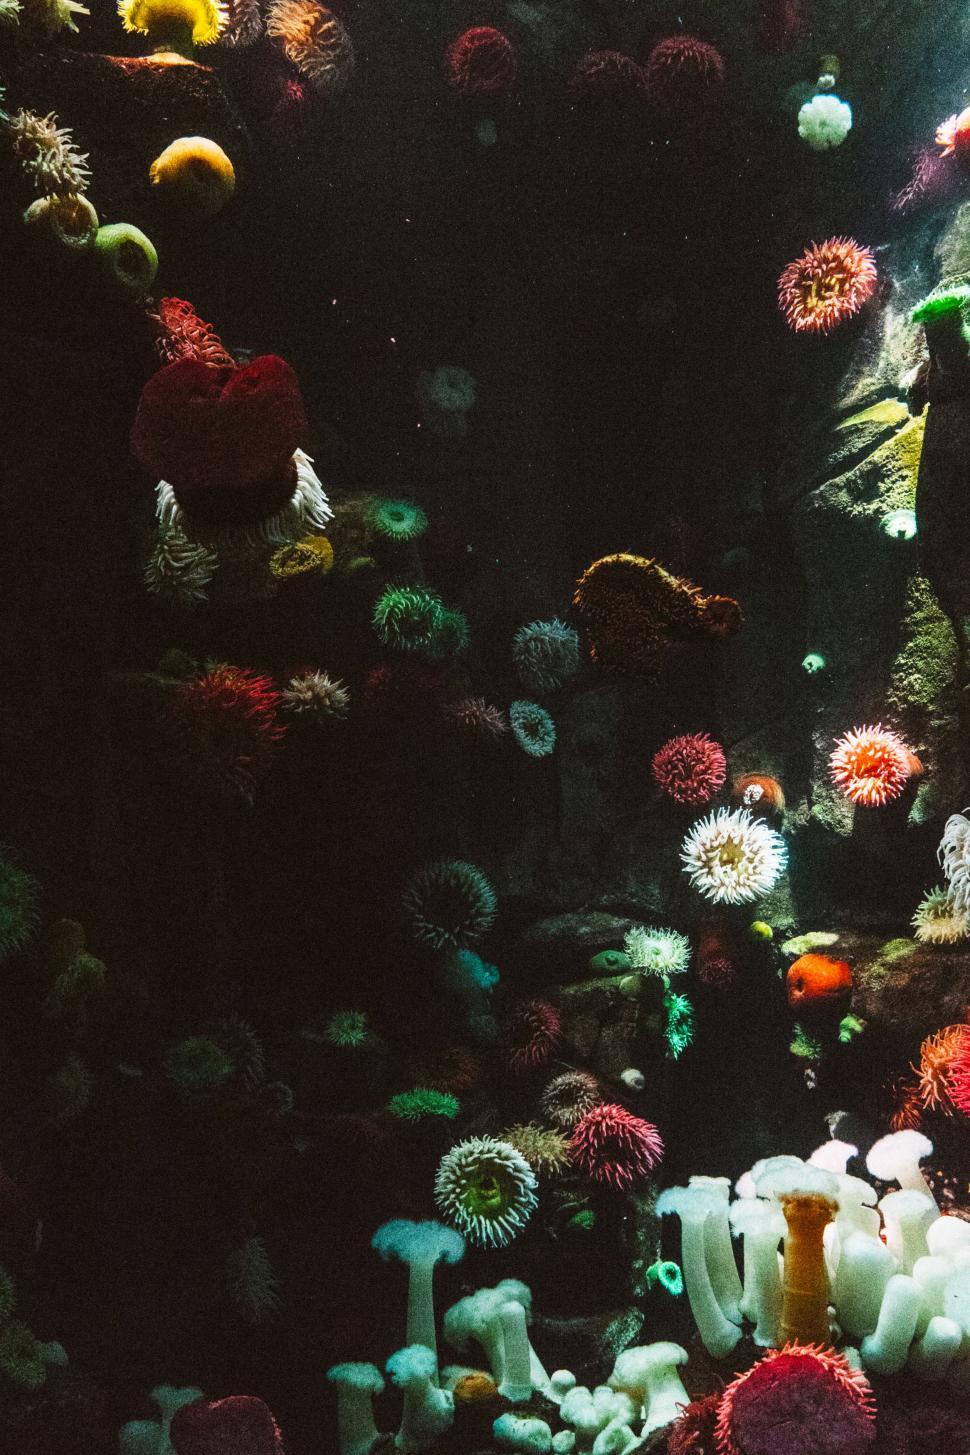 Free Image of Diverse Fish Species in a Large Aquarium 